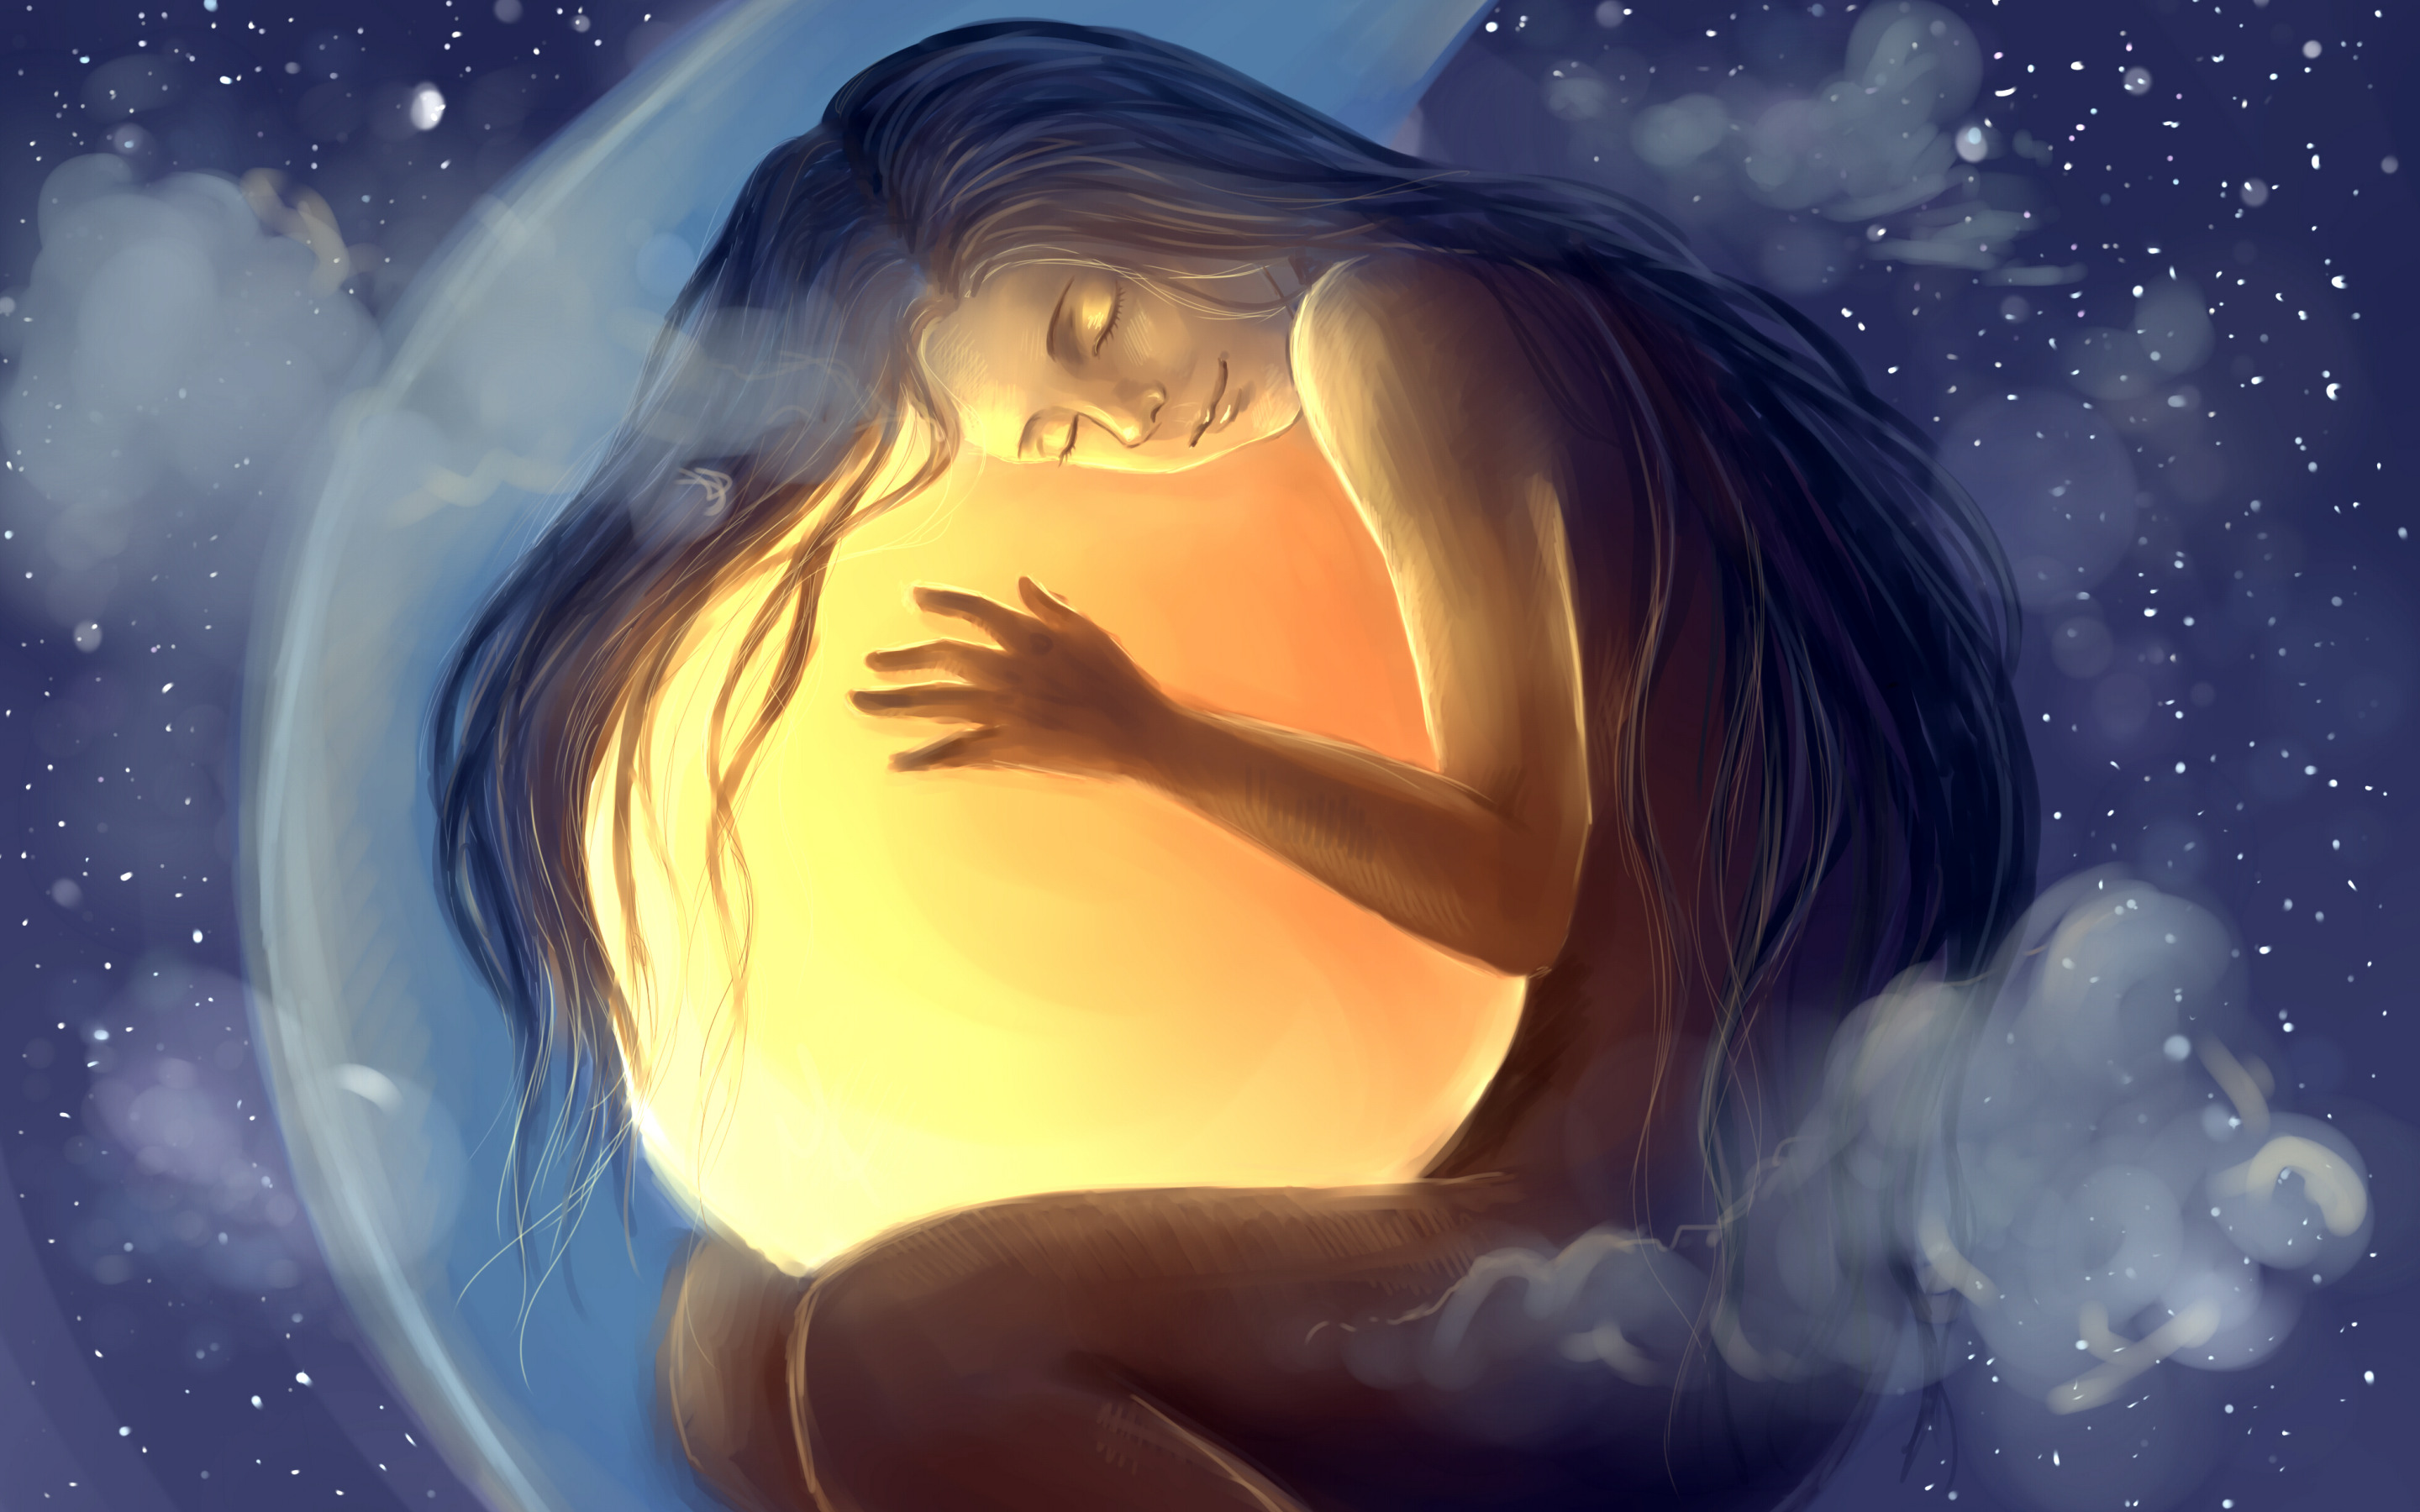 В объятьях ночи звезды сиянье слушать. Девушка обнимает солнце. Женщина Луна. Счастливых снов. Мужчина солнце женщина Луна.